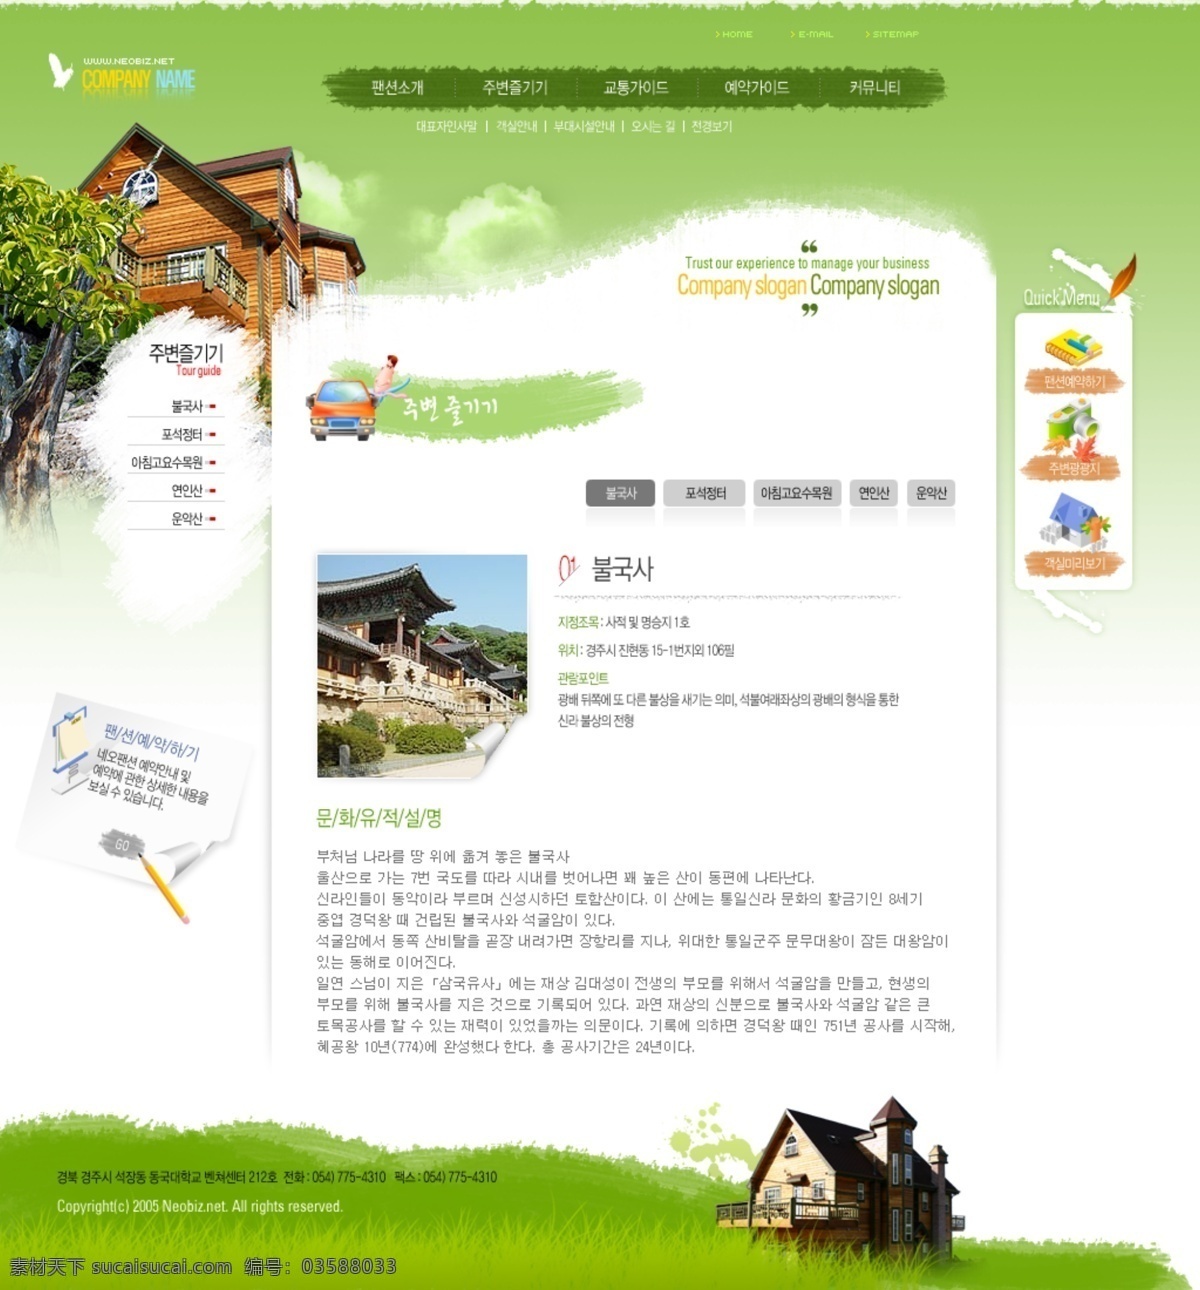 韩国旅游 渡假村 网站 网页模板 糜 味 杉 俅 逋 衬 网页素材